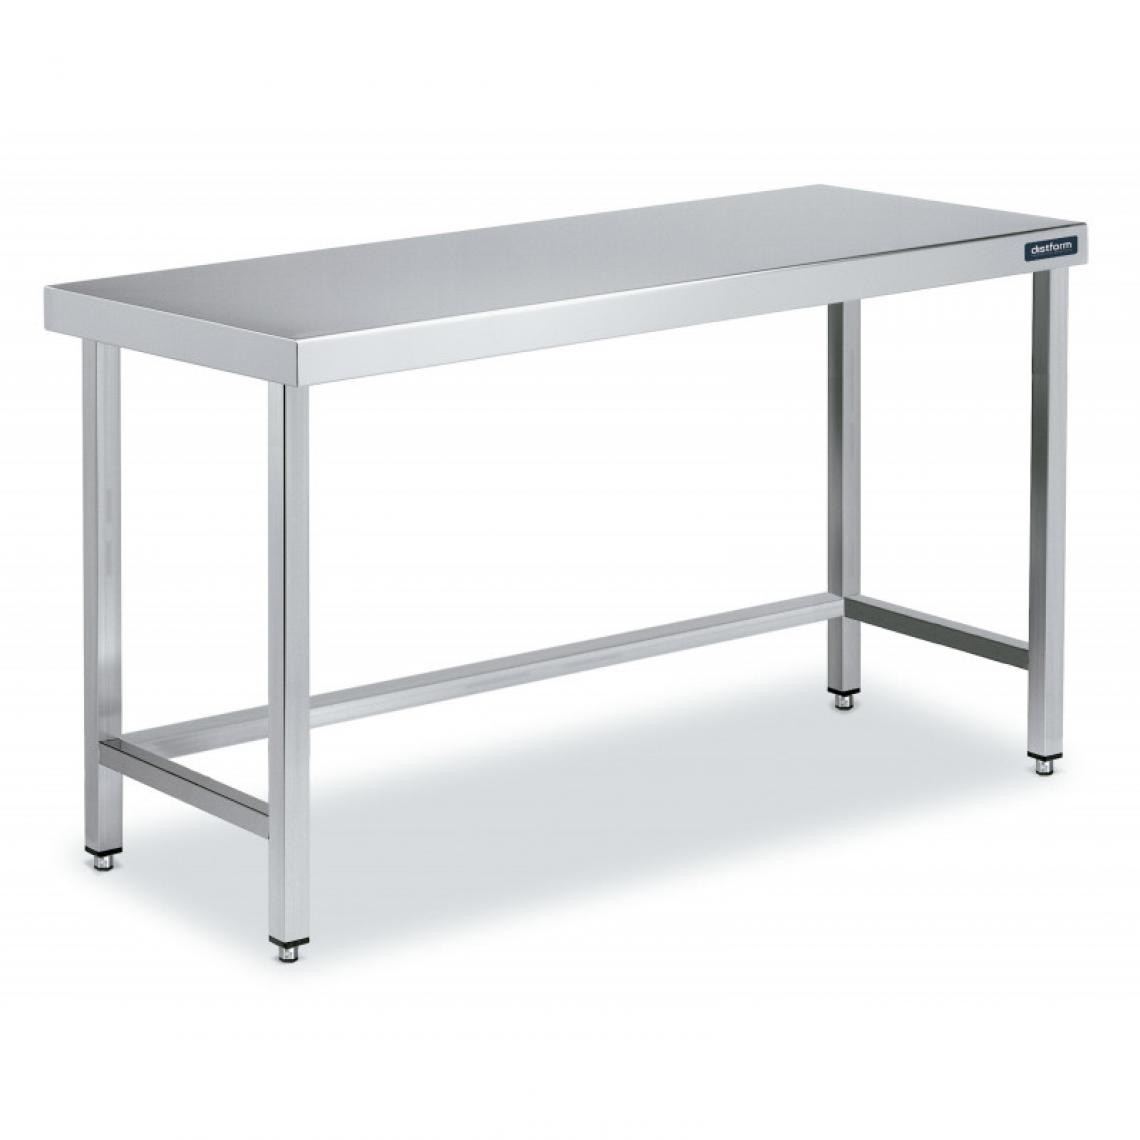 DISTFORM - Table Centrale en Inox avec renforts Profondeur 600mm - Distform - Acier inoxydable2200x600 - Tables à manger